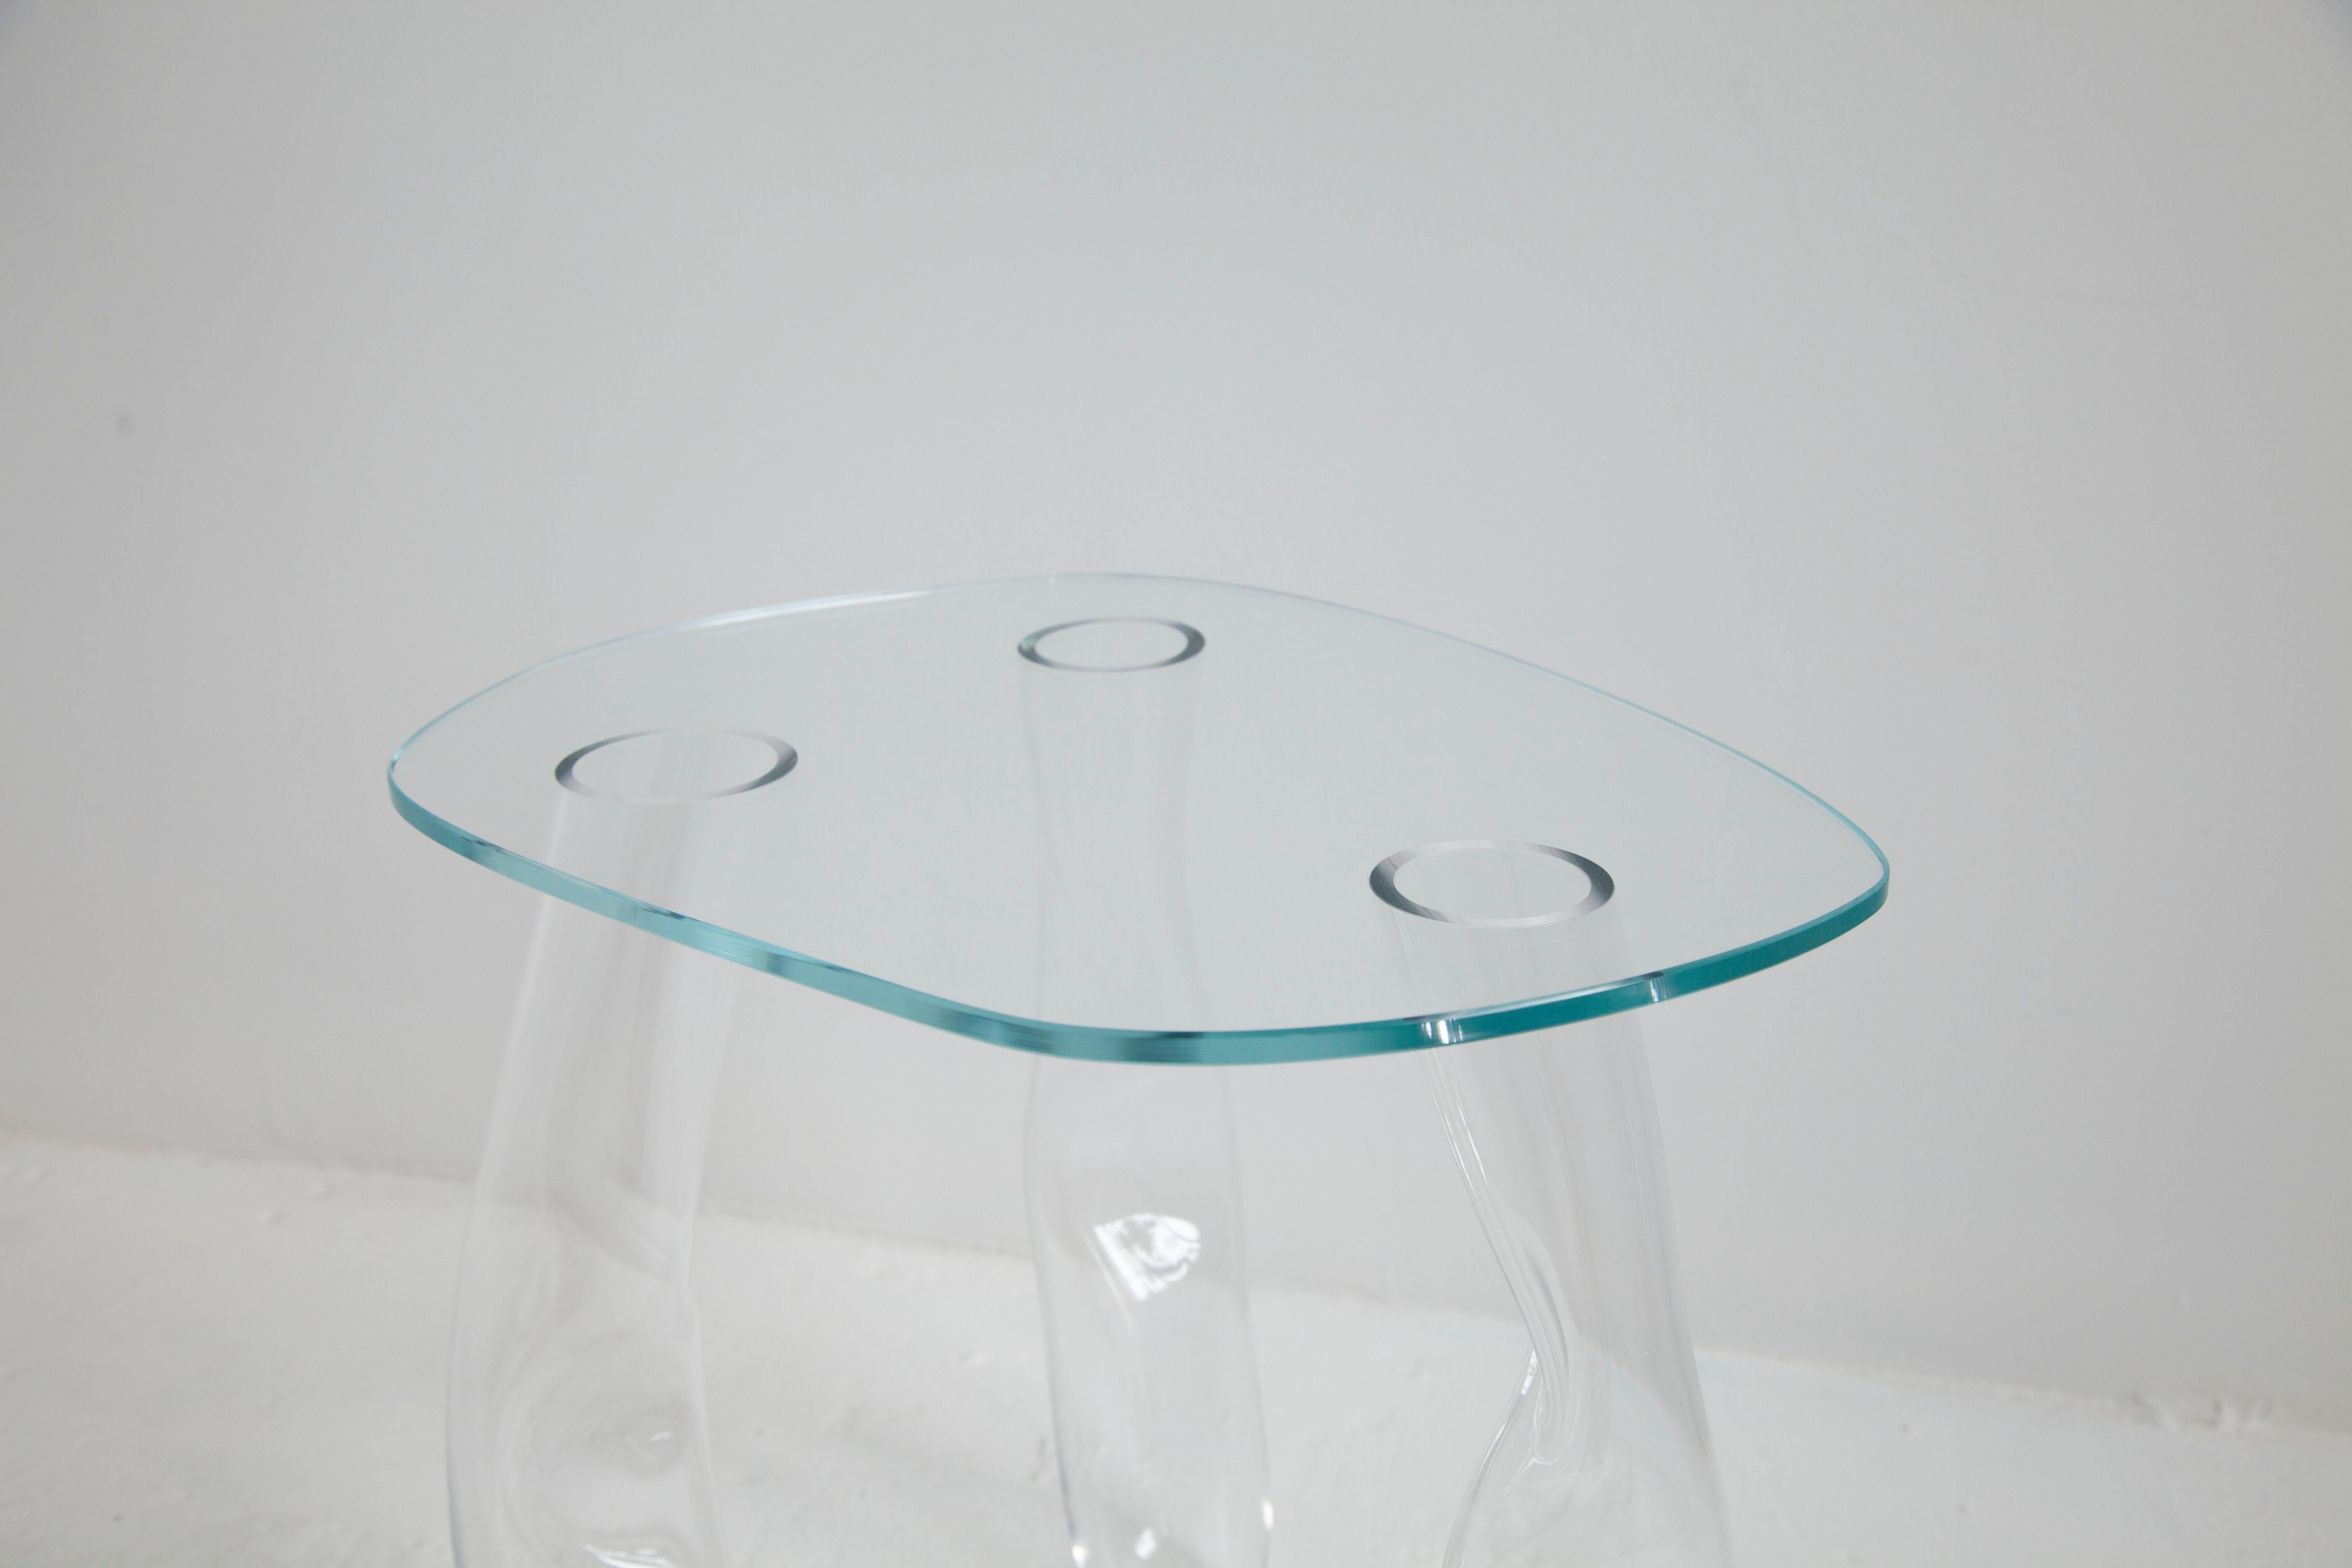 Les tables en verre de Clara Jorisch sont fabriquées en verre soufflé et collées aux UV. Toutes les tables sont uniques - rappelant le geste du souffleur de verre qui donne à chacune sa forme particulière. 

Clara Jorisch est une designer et une